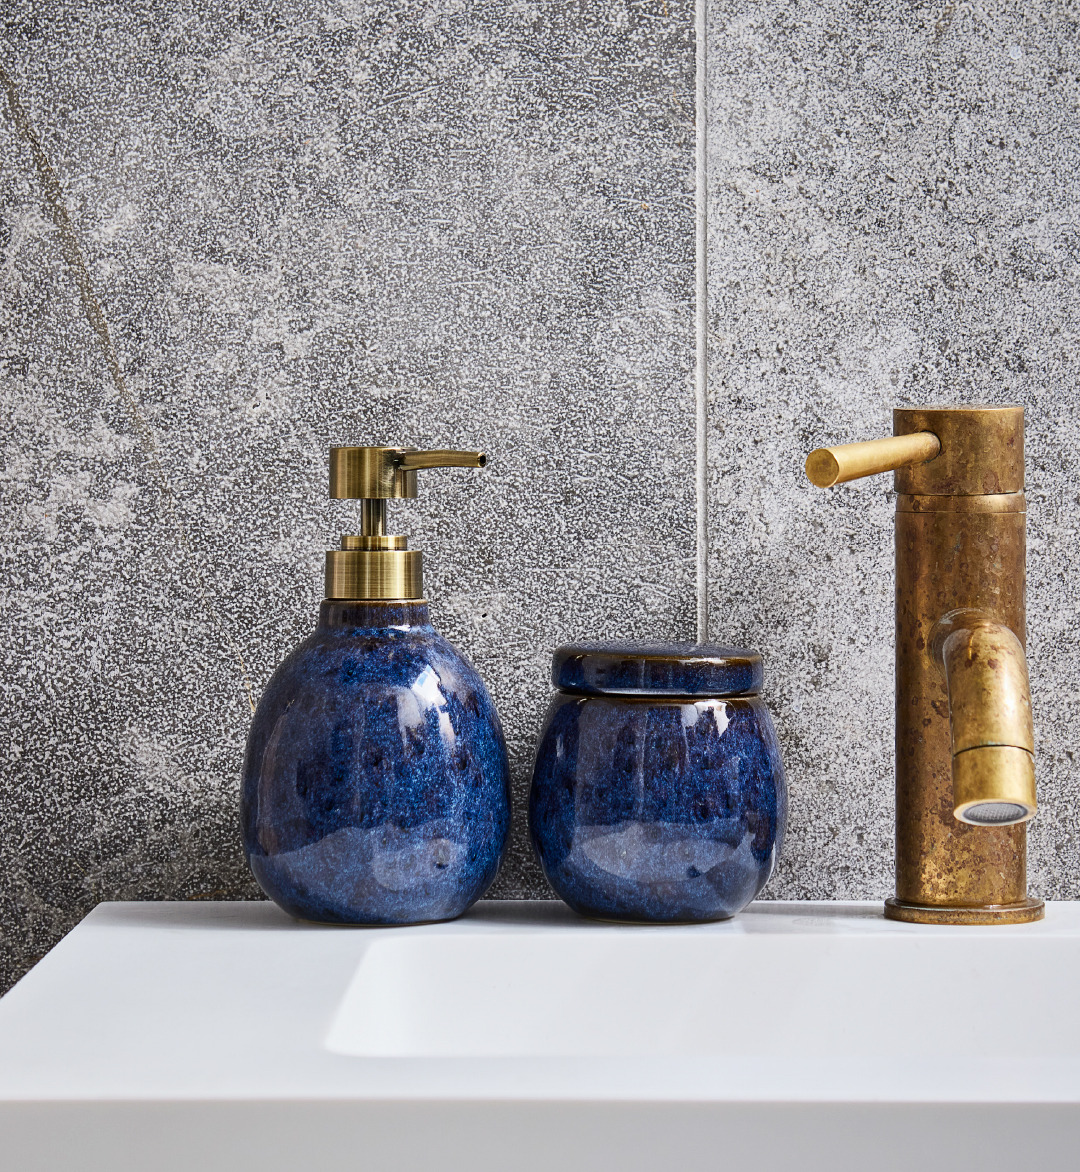 Blue bathroom soap dispenser and storage jar on sink